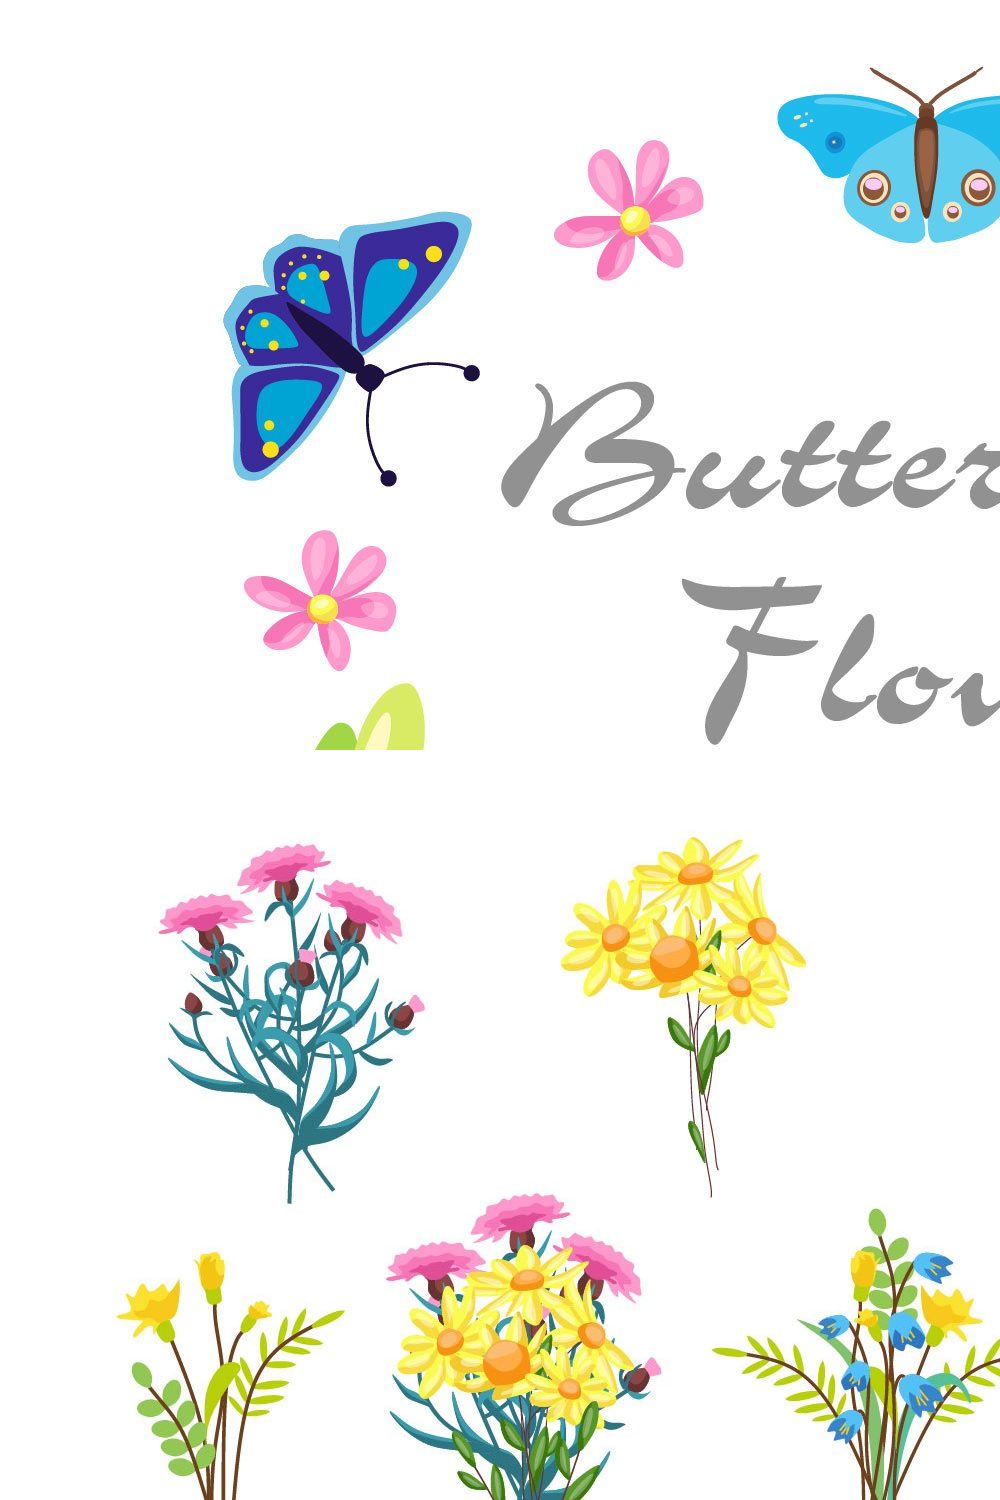 Butterflies pinterest preview image.